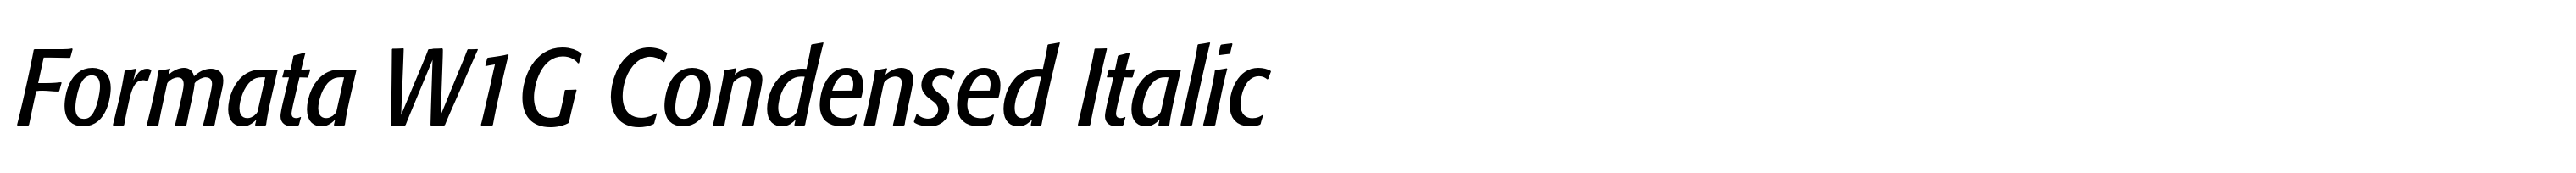 Formata W1G Condensed Italic